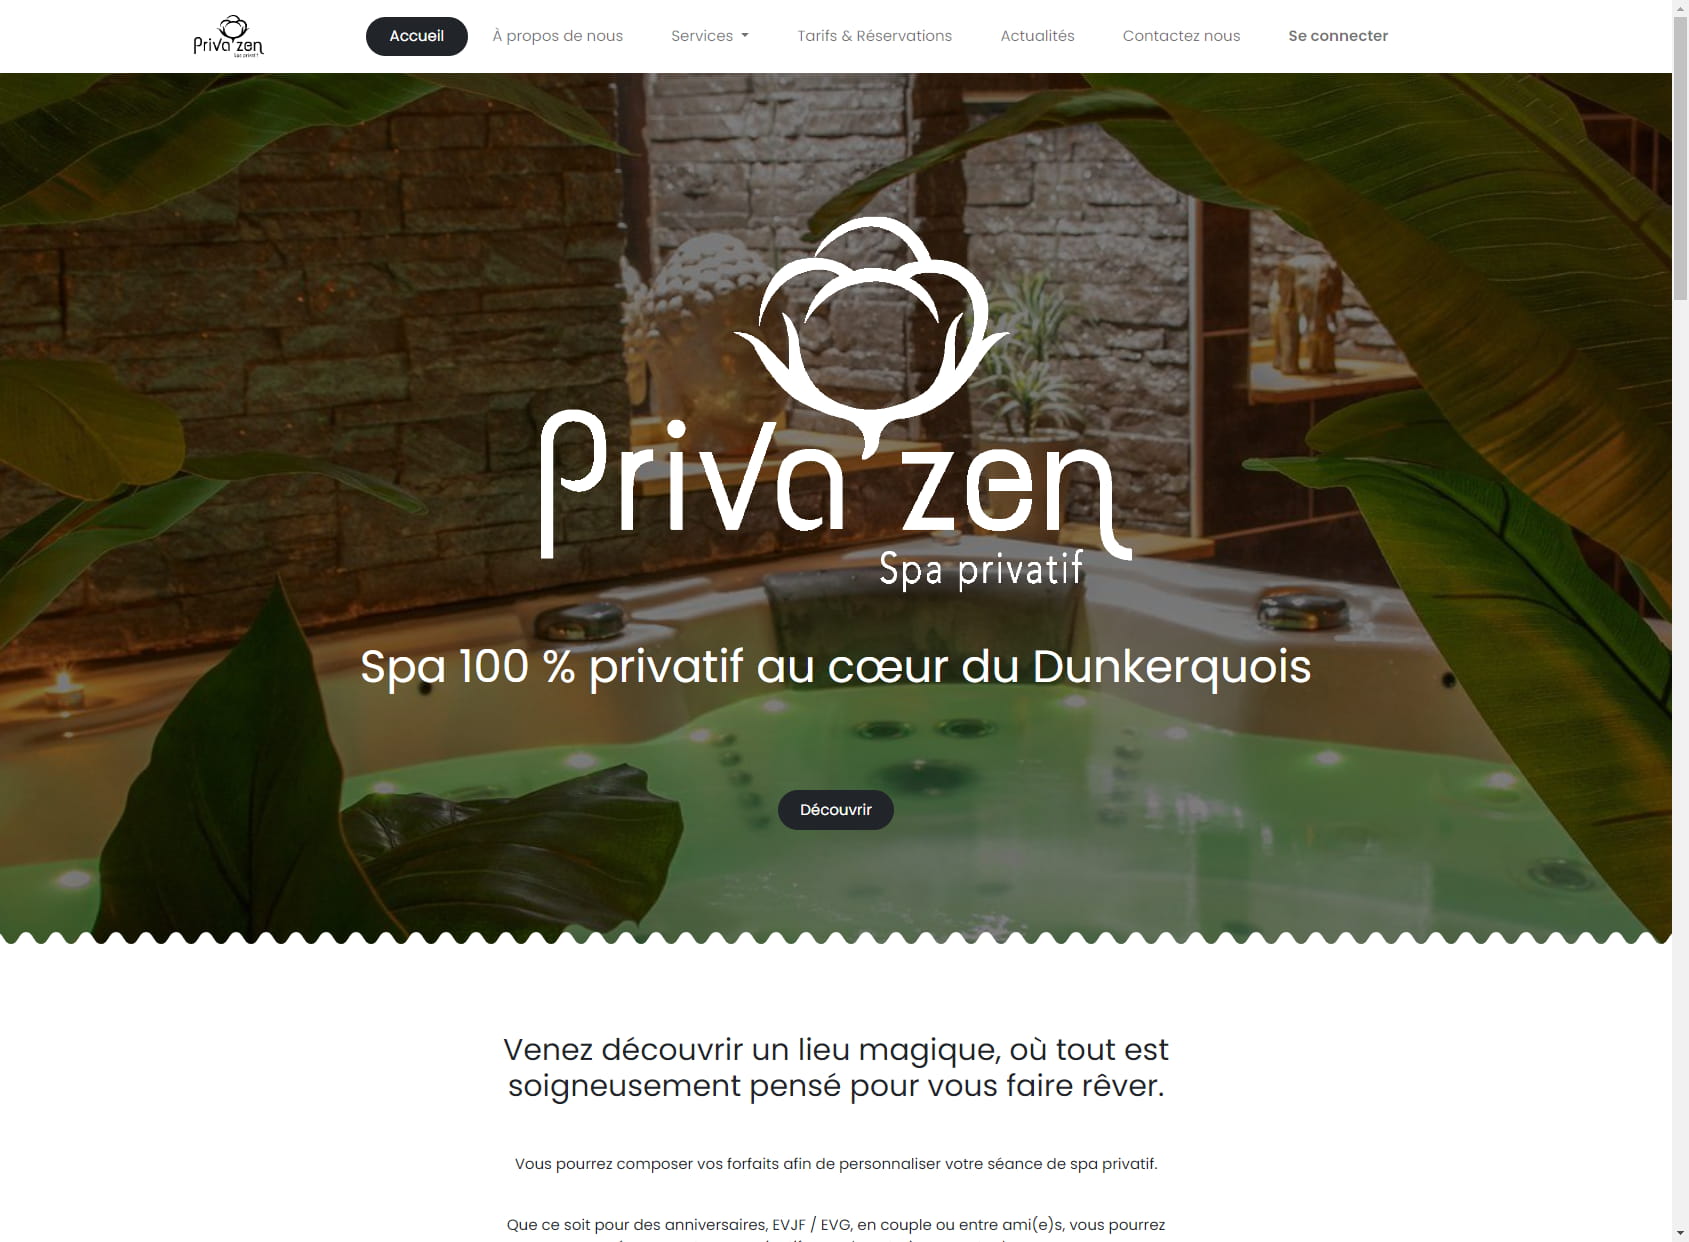 Priva'zen - Spa 100% privatif au cœur du Dunkerquois